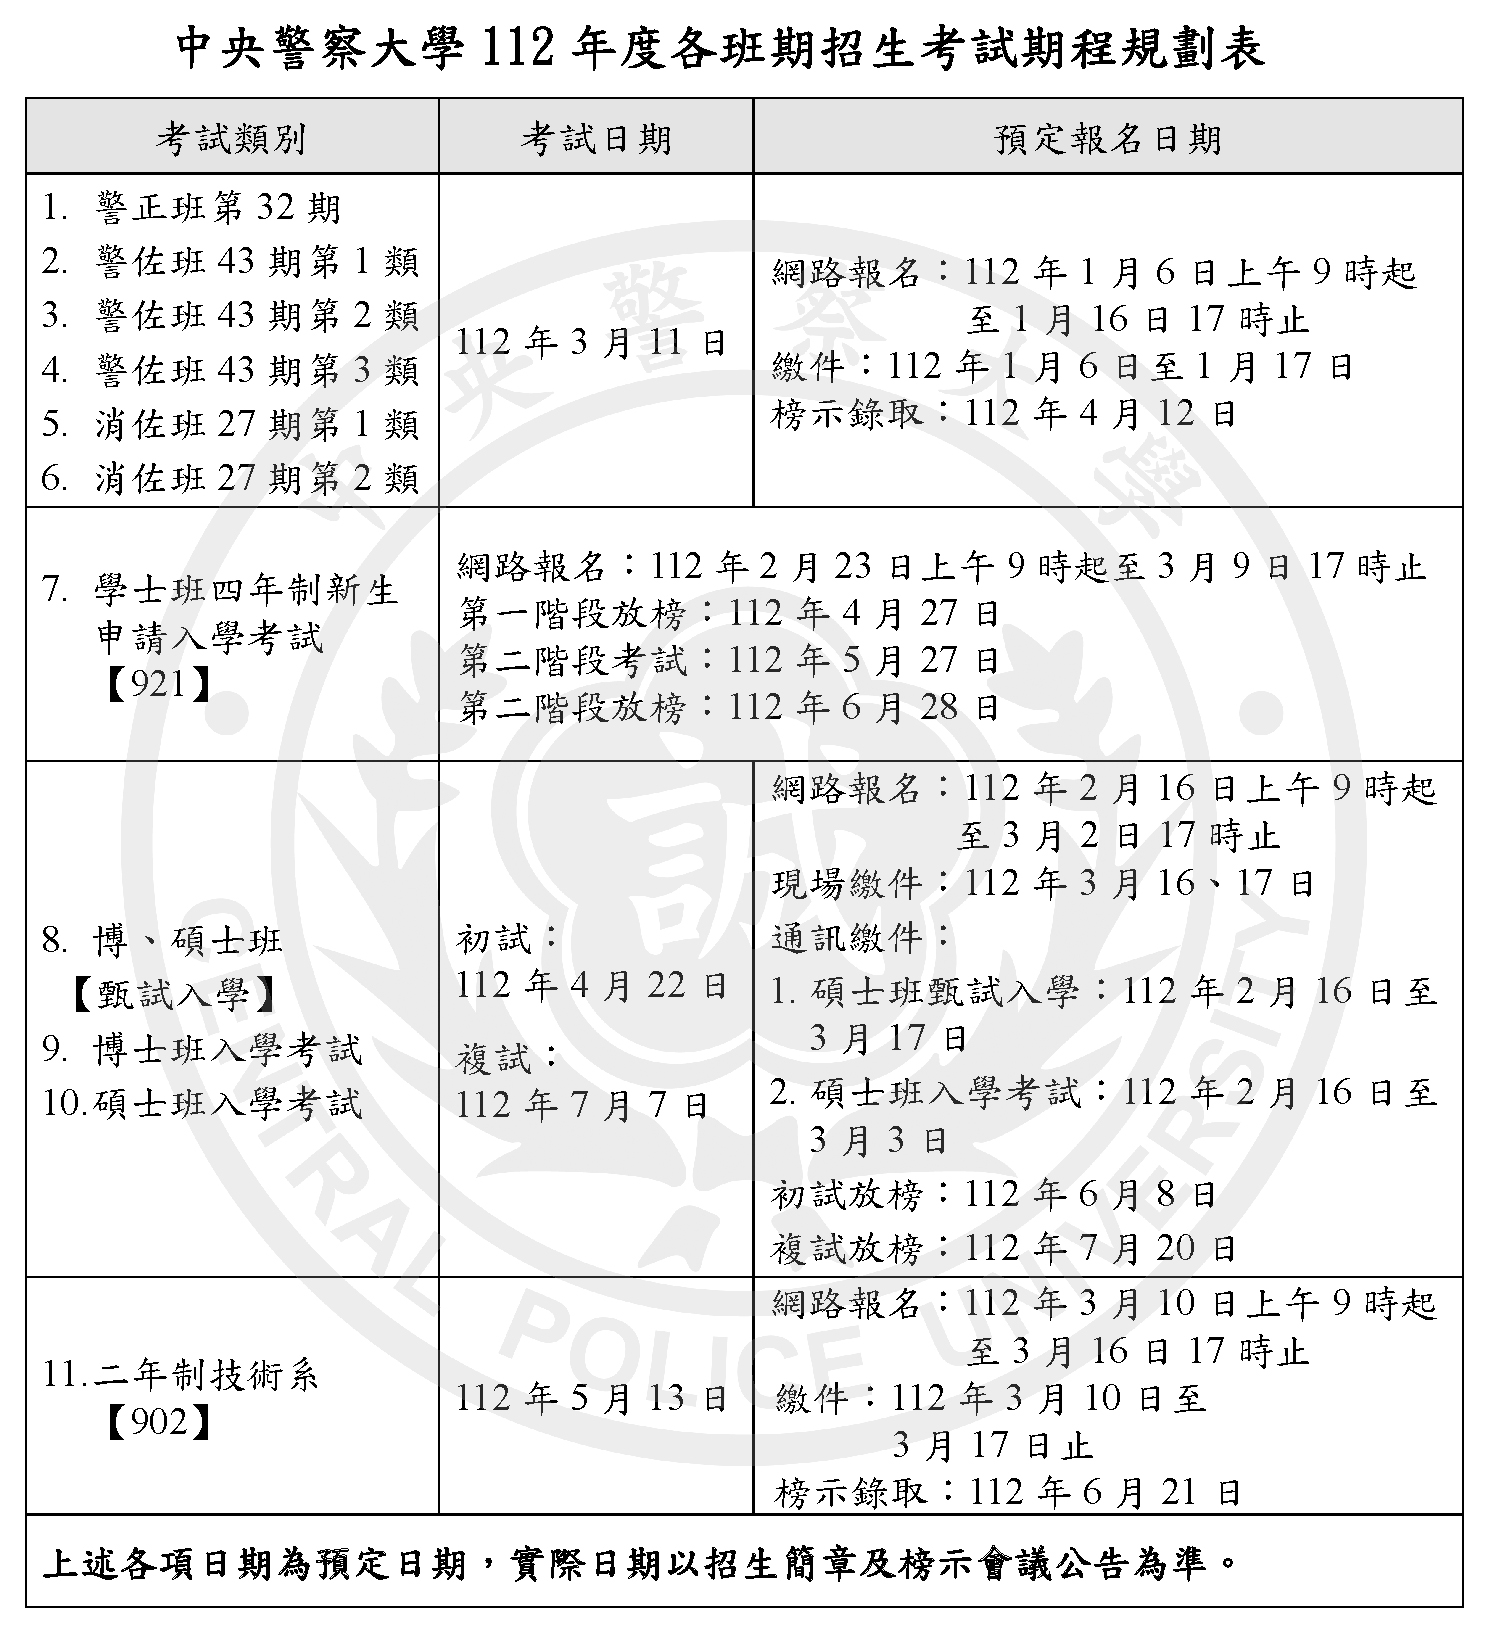 中央警察大學112年度招生考試期程規劃表